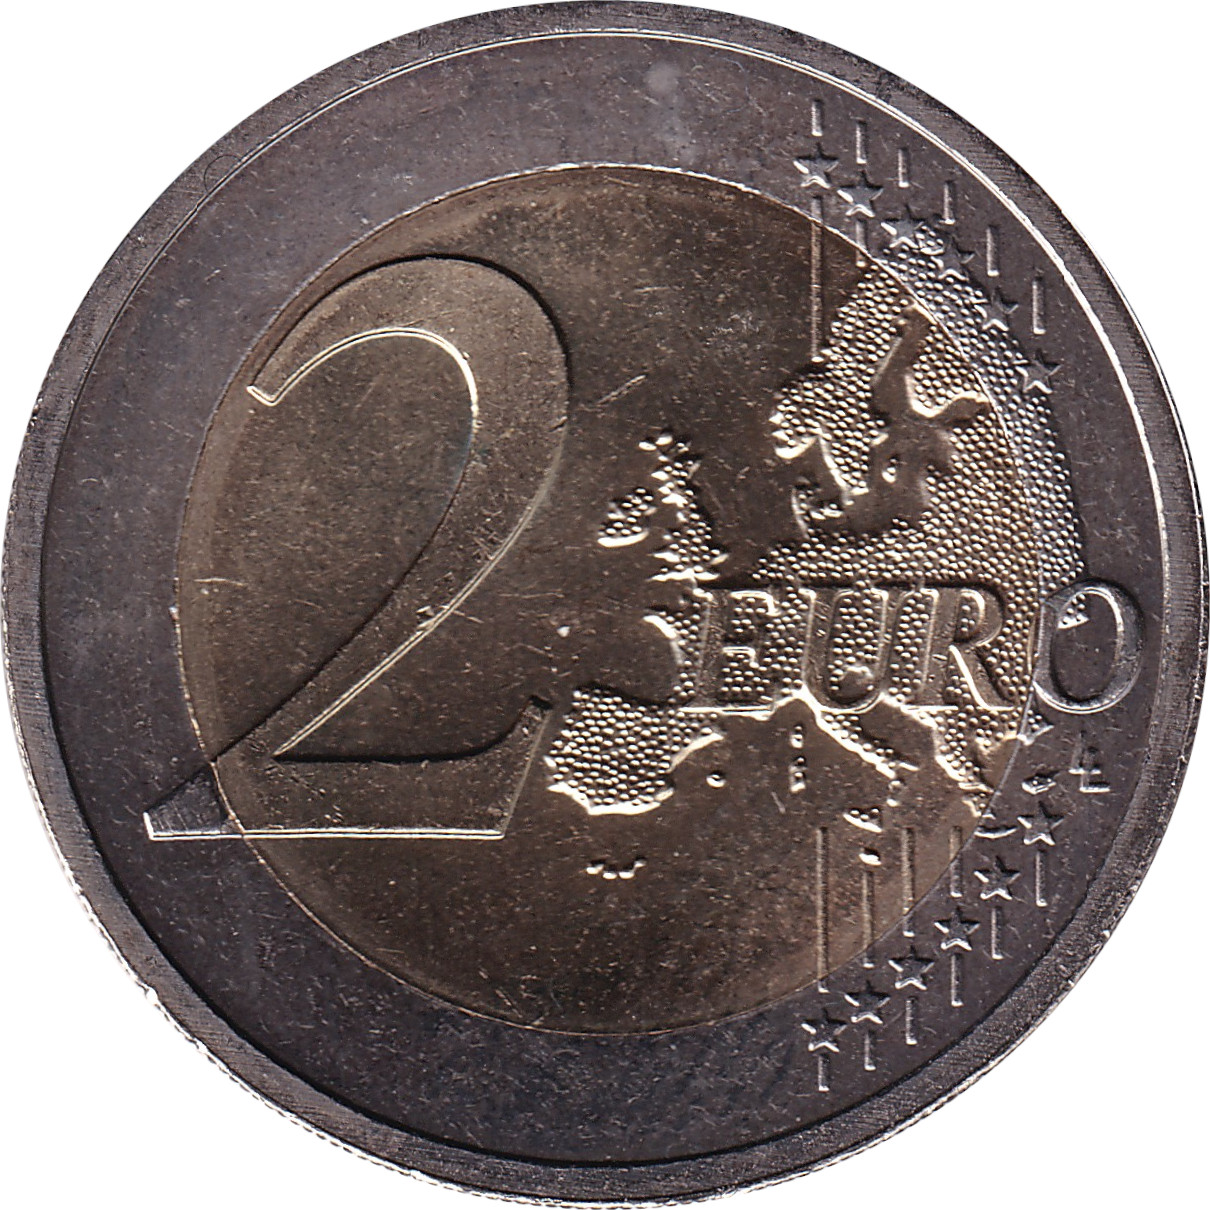 2 euro - Les trois ducs